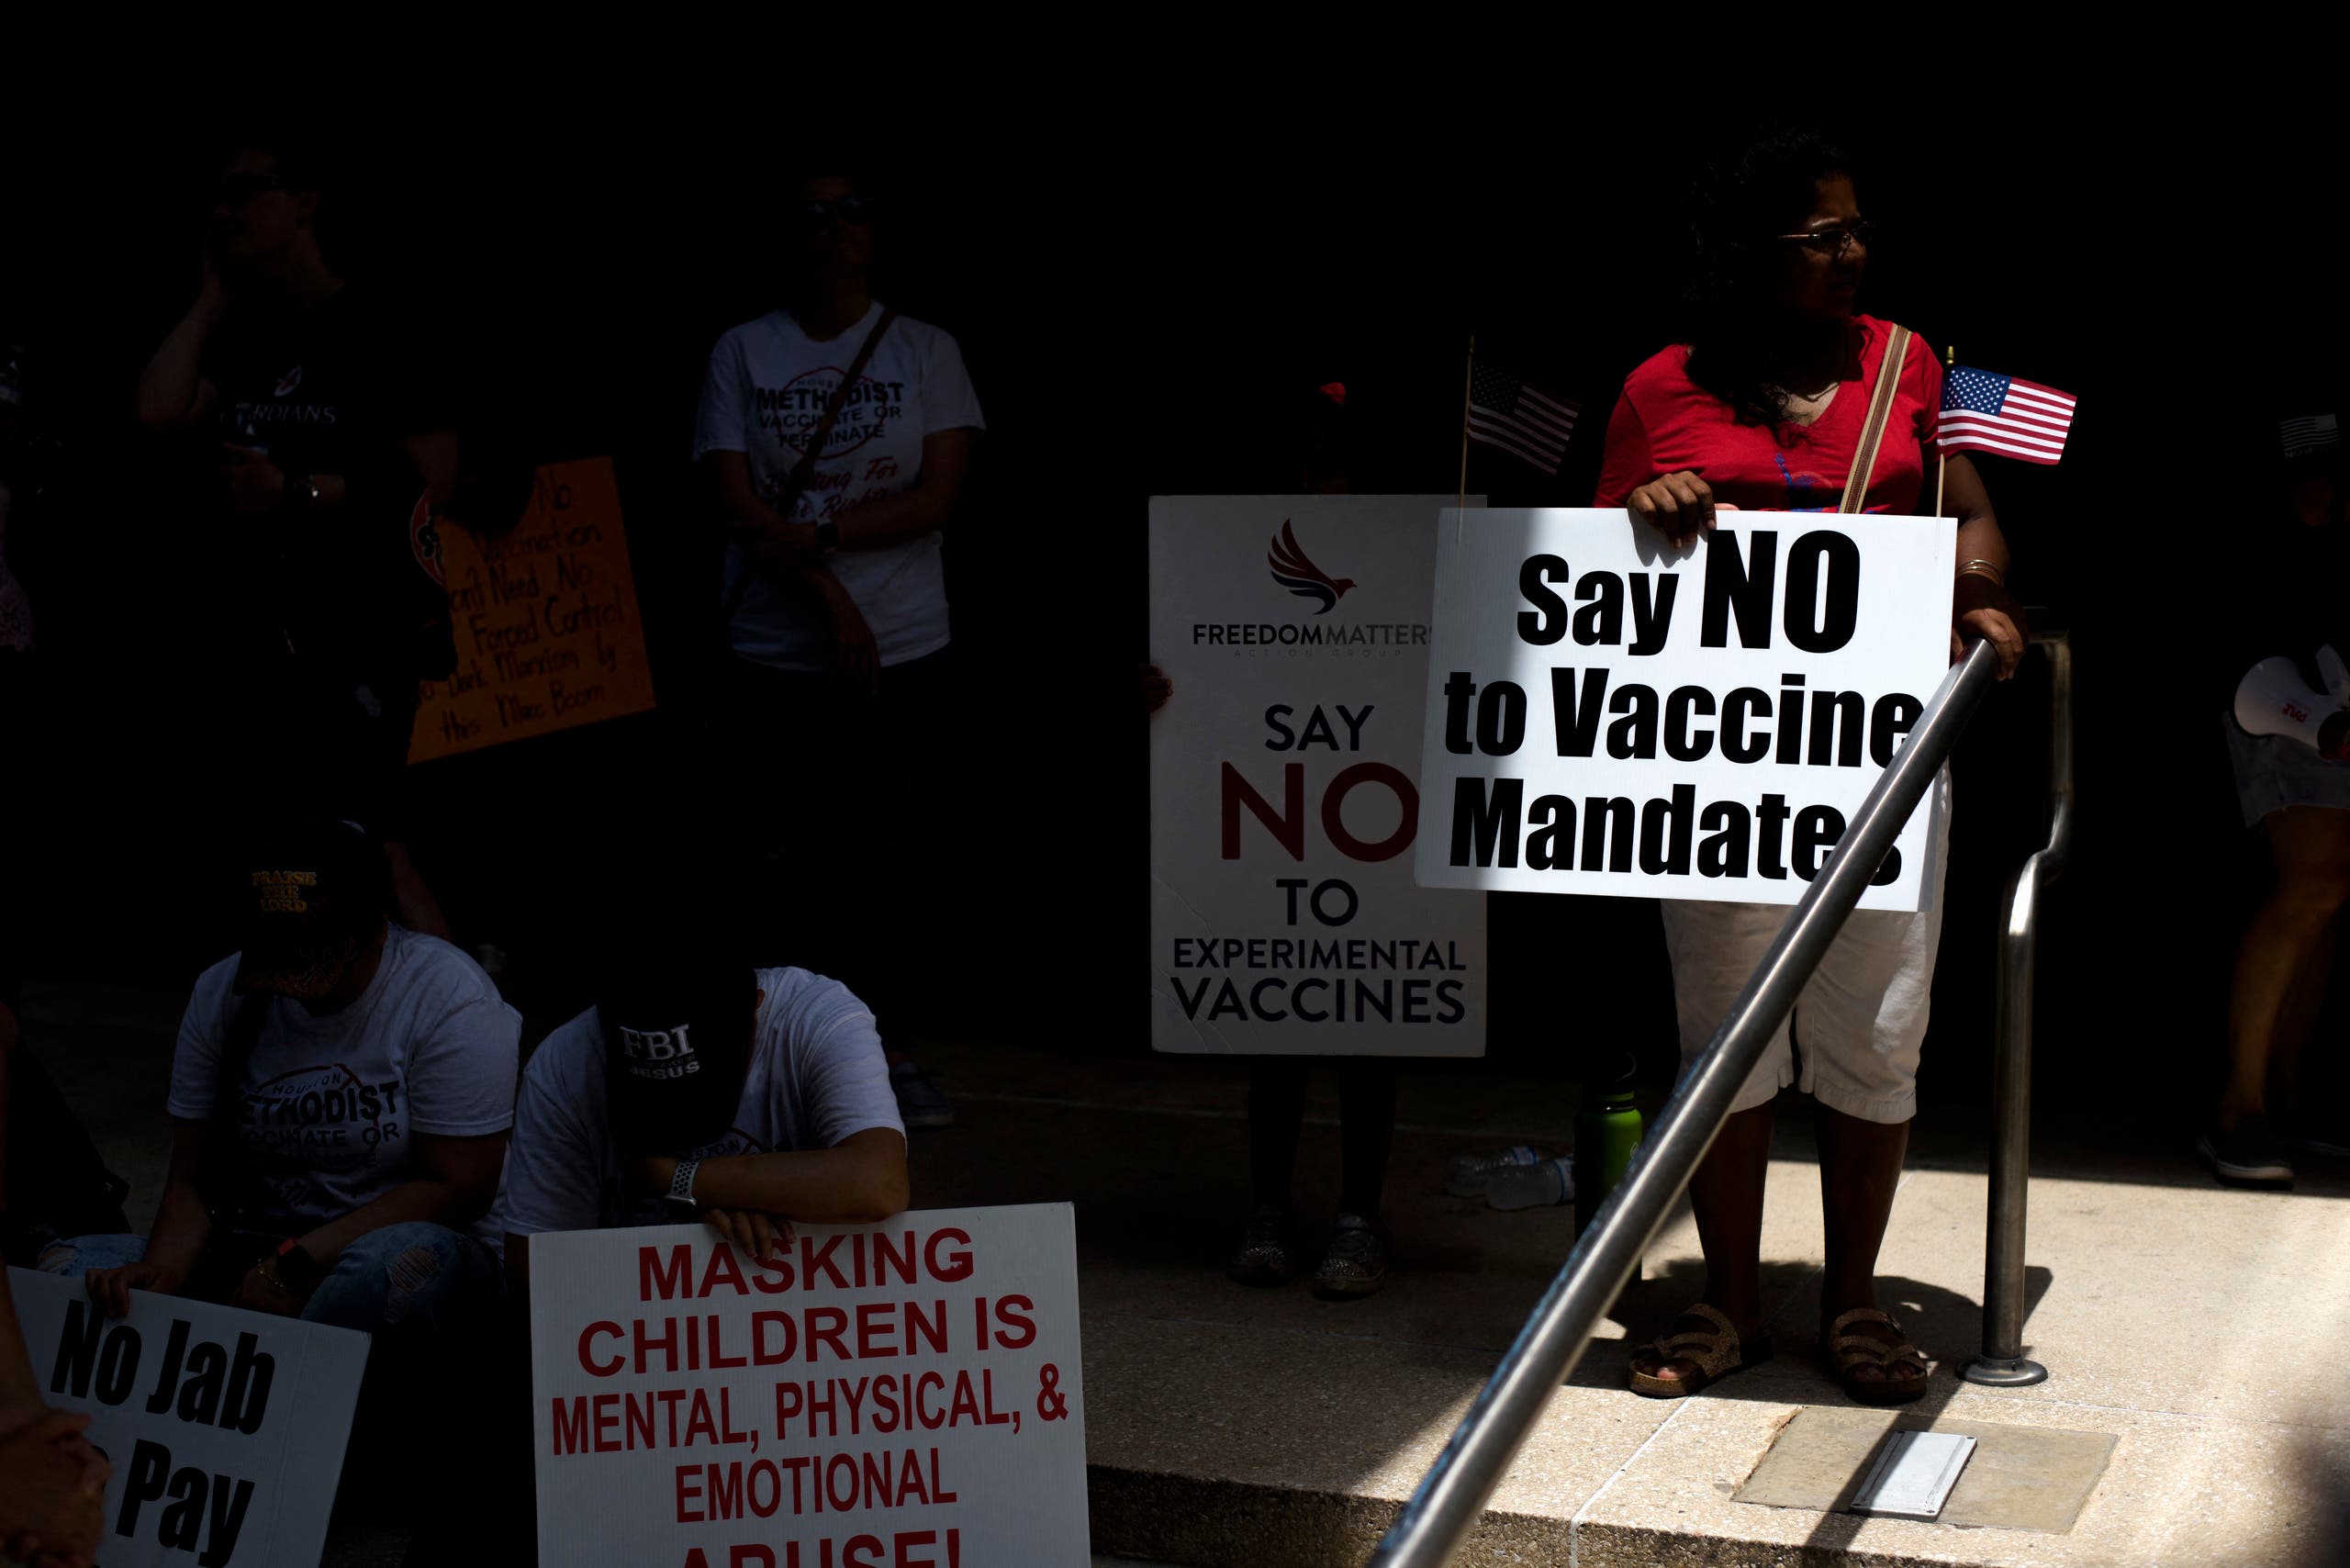 تظاهرة في هيوستون تندد بسياسة فرض اللقاحات ببعض أماكن العمل